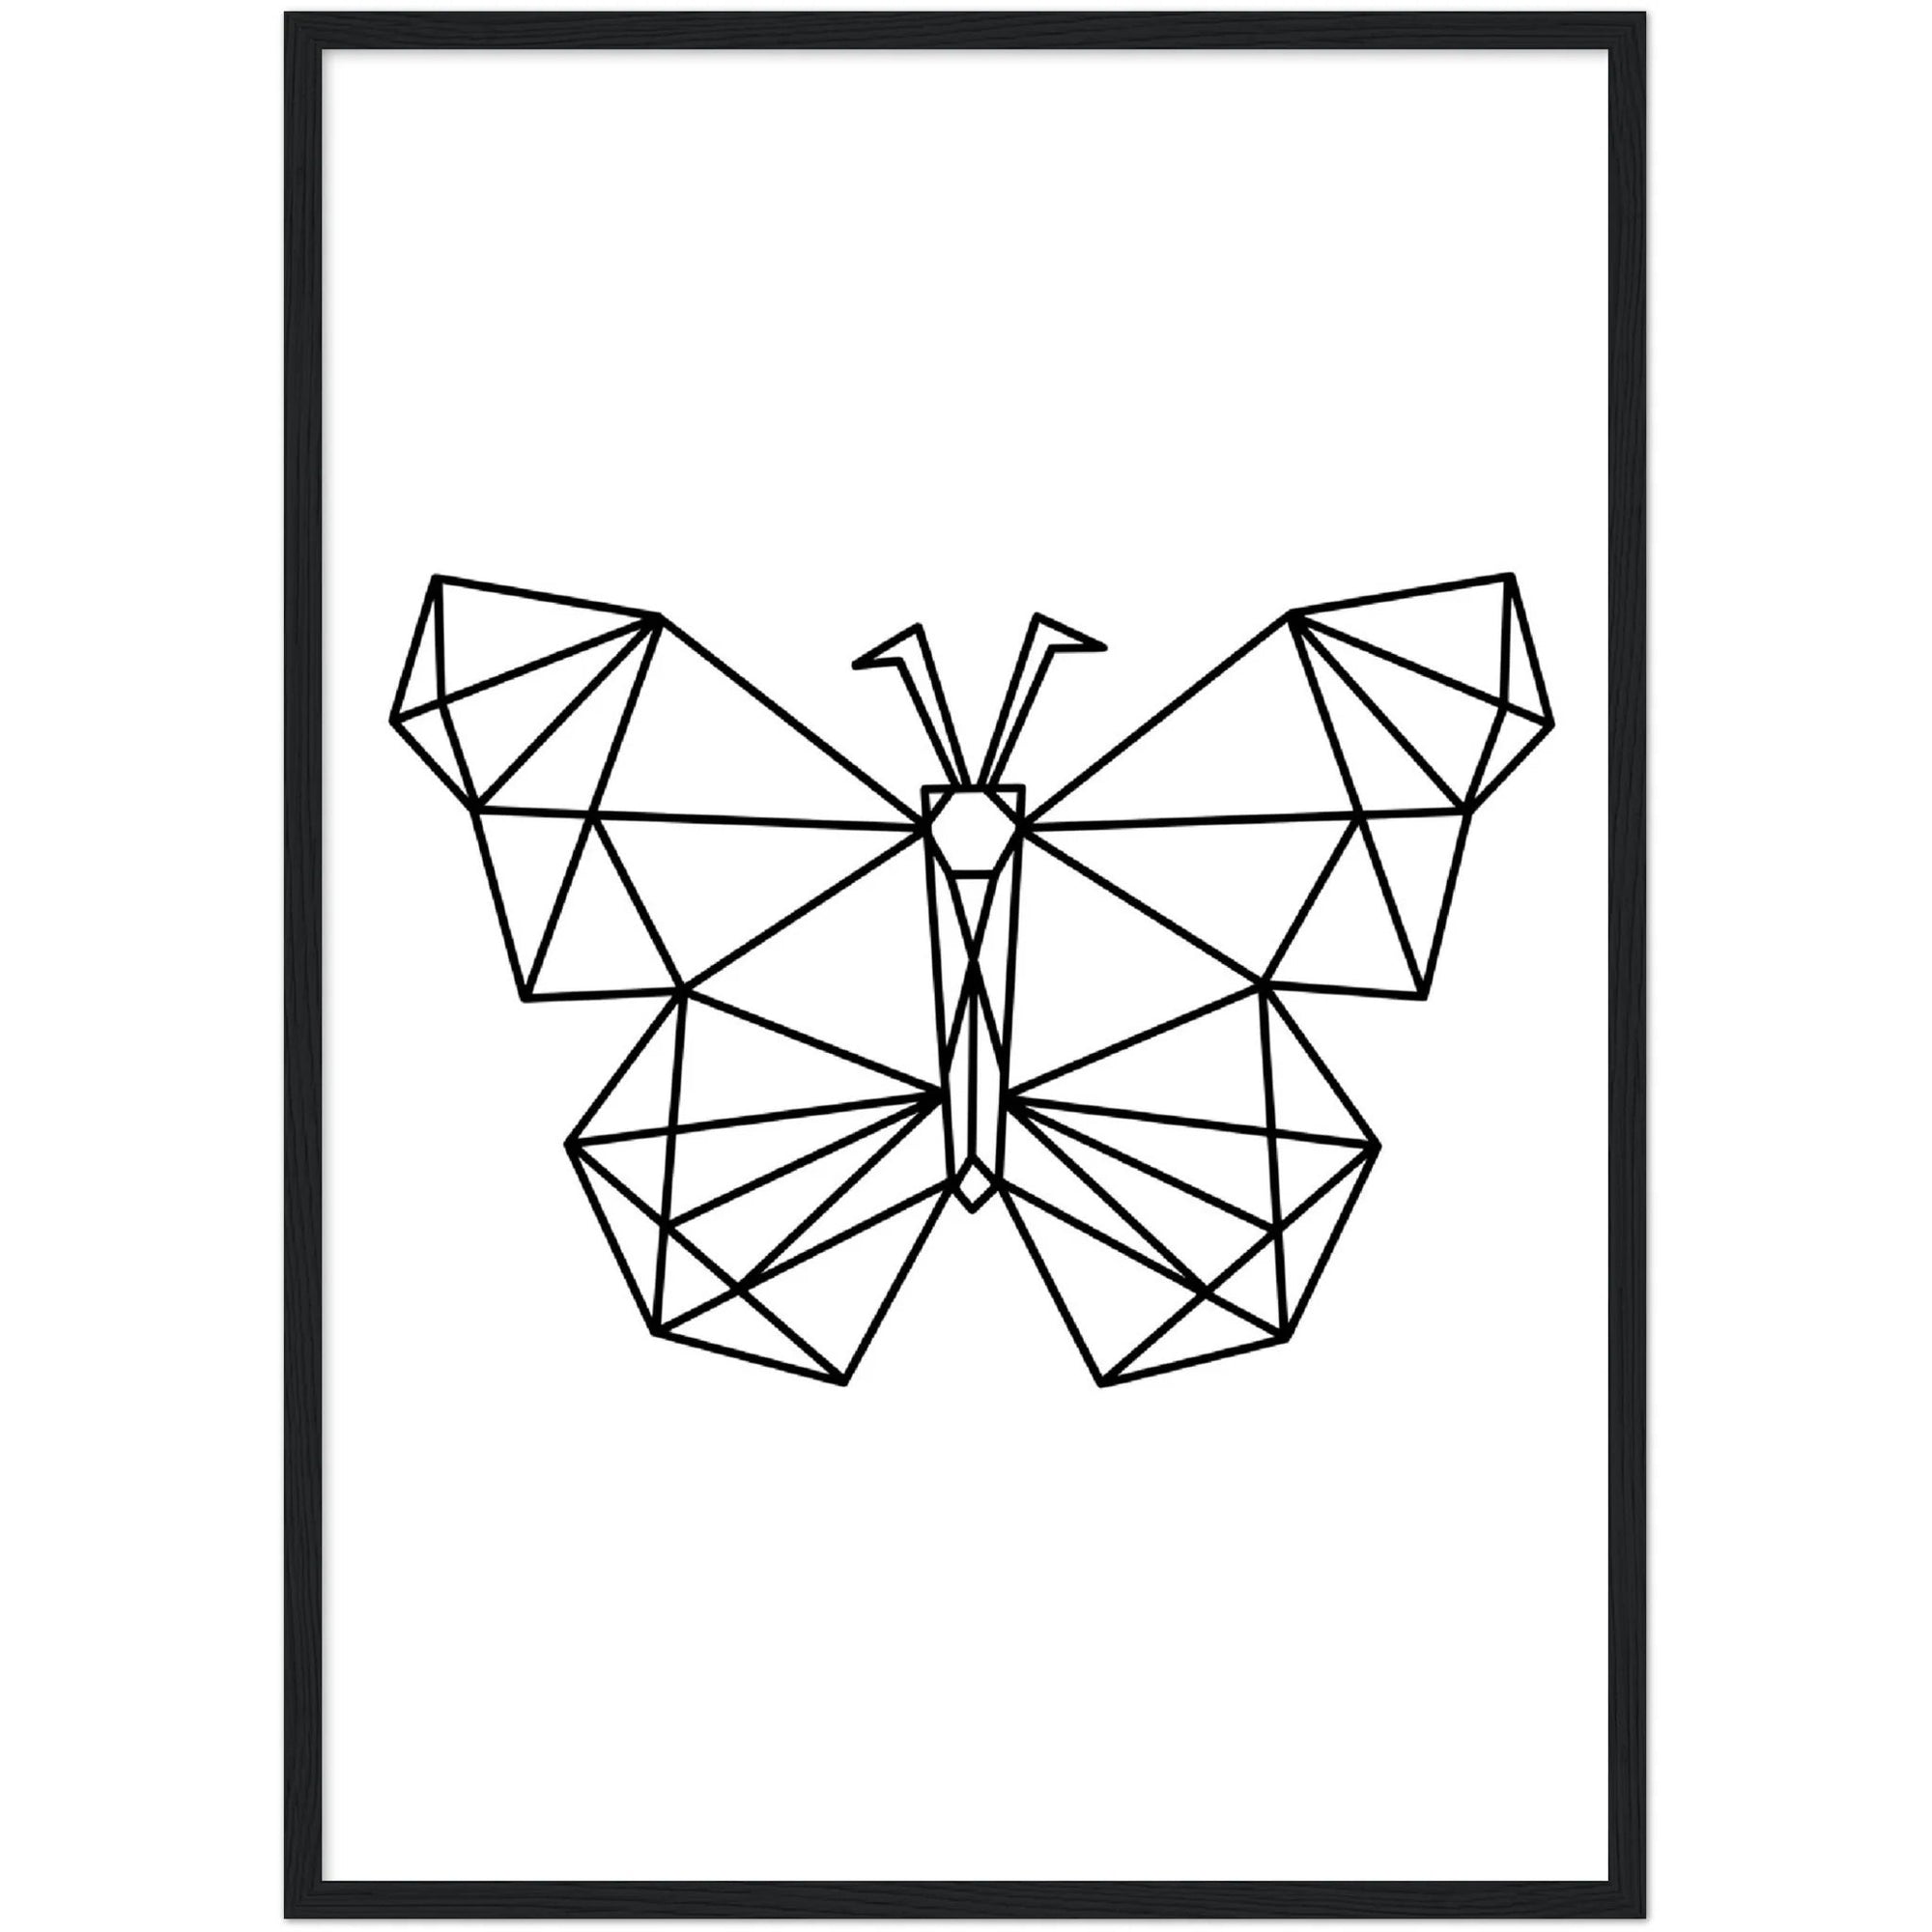 Tableau Géométrique Papillon - The Art Avenue